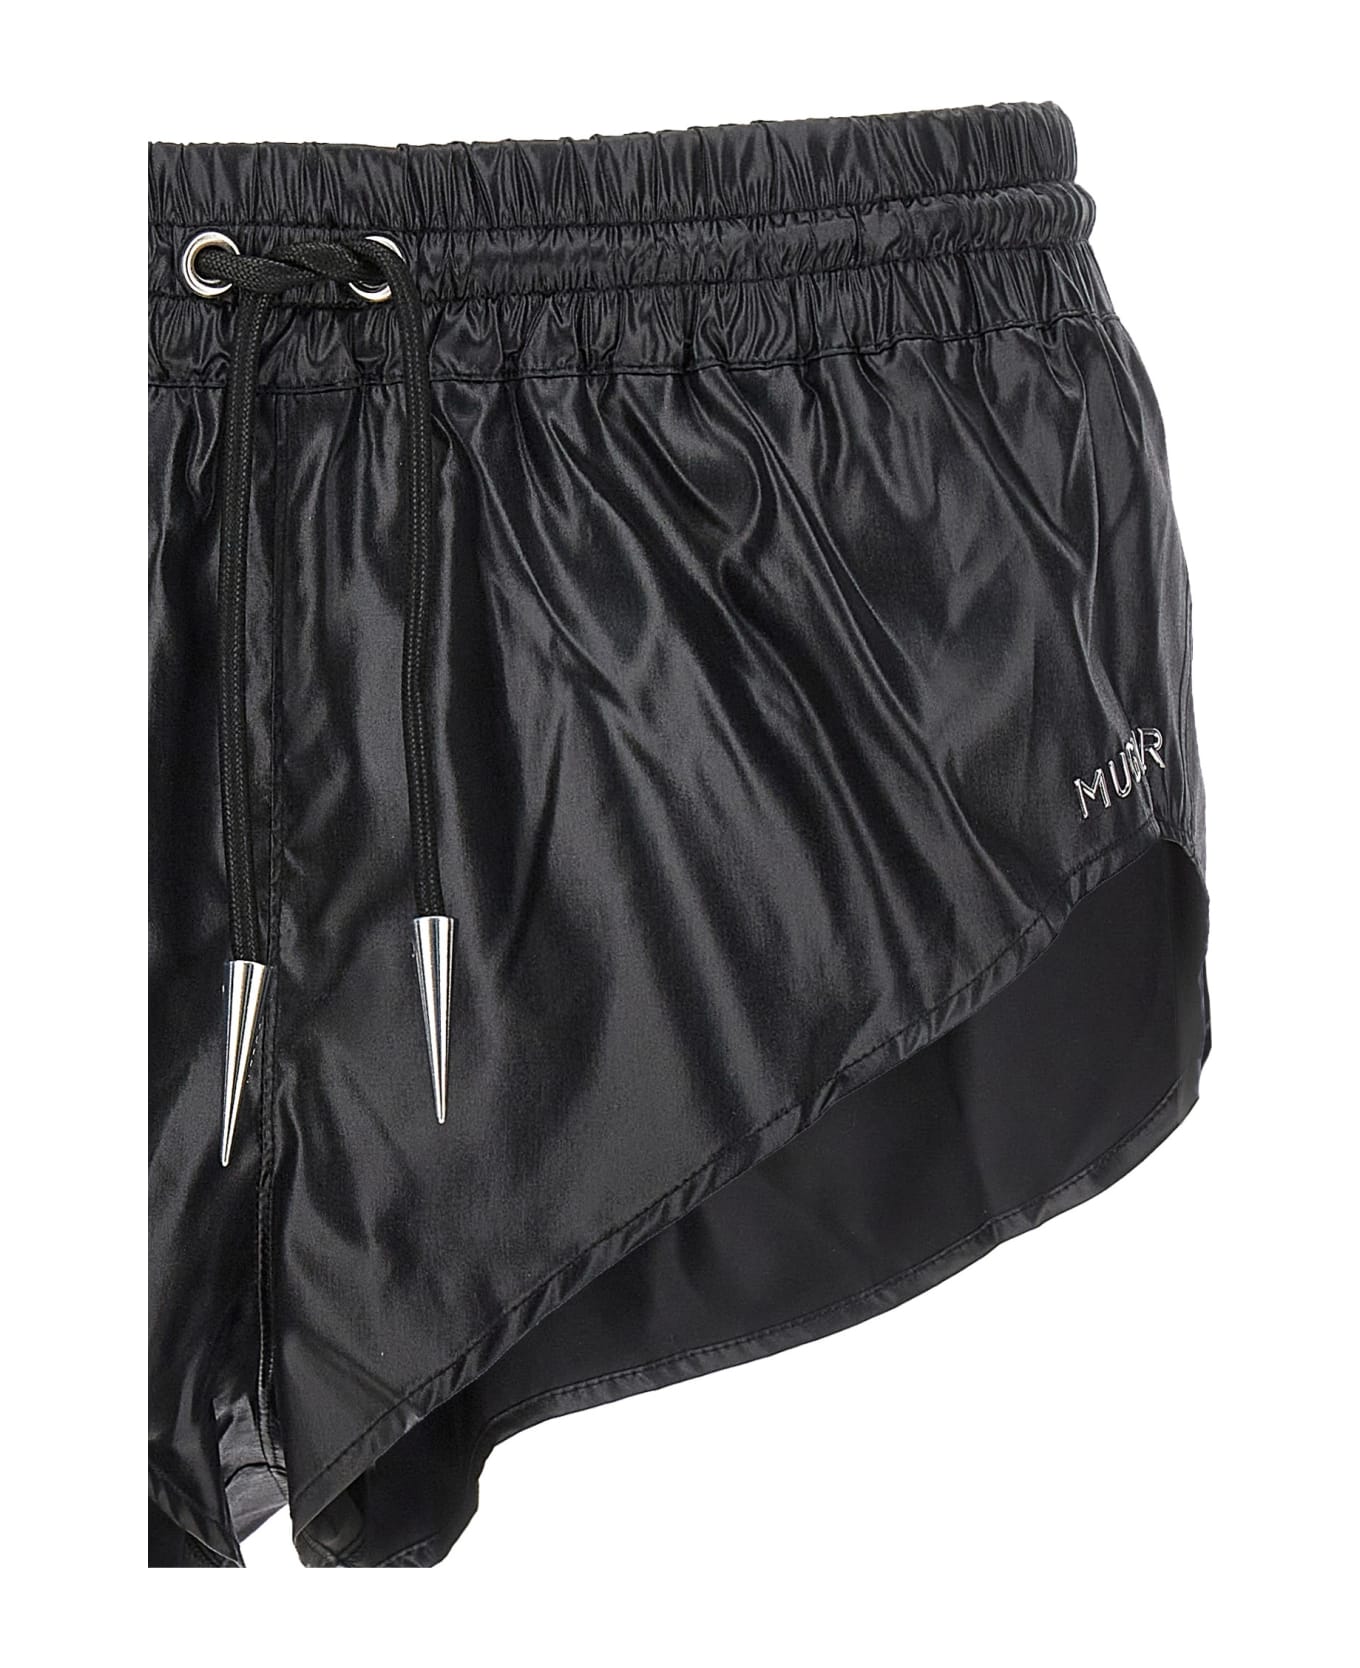 Mugler Shiny Effect Fabric Swimsuit Shorts - Black  